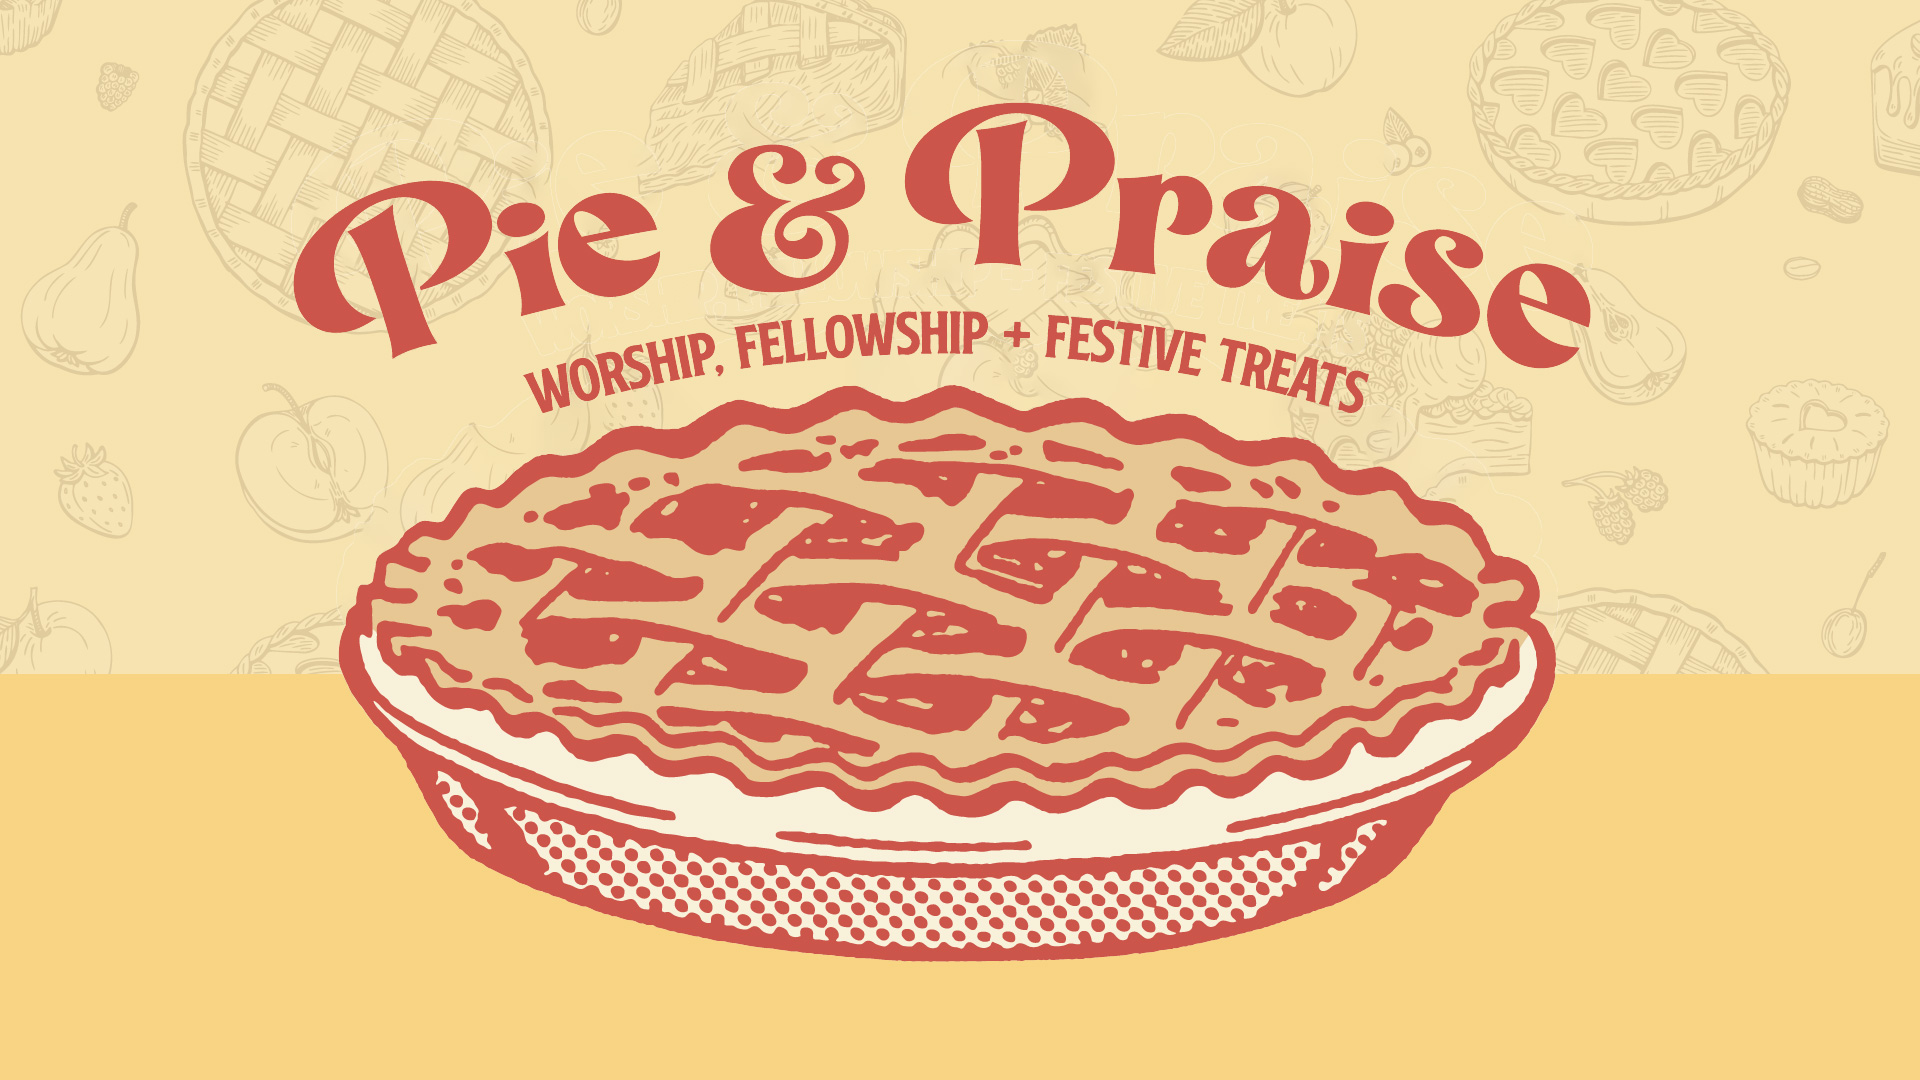 Pie & Praise Night